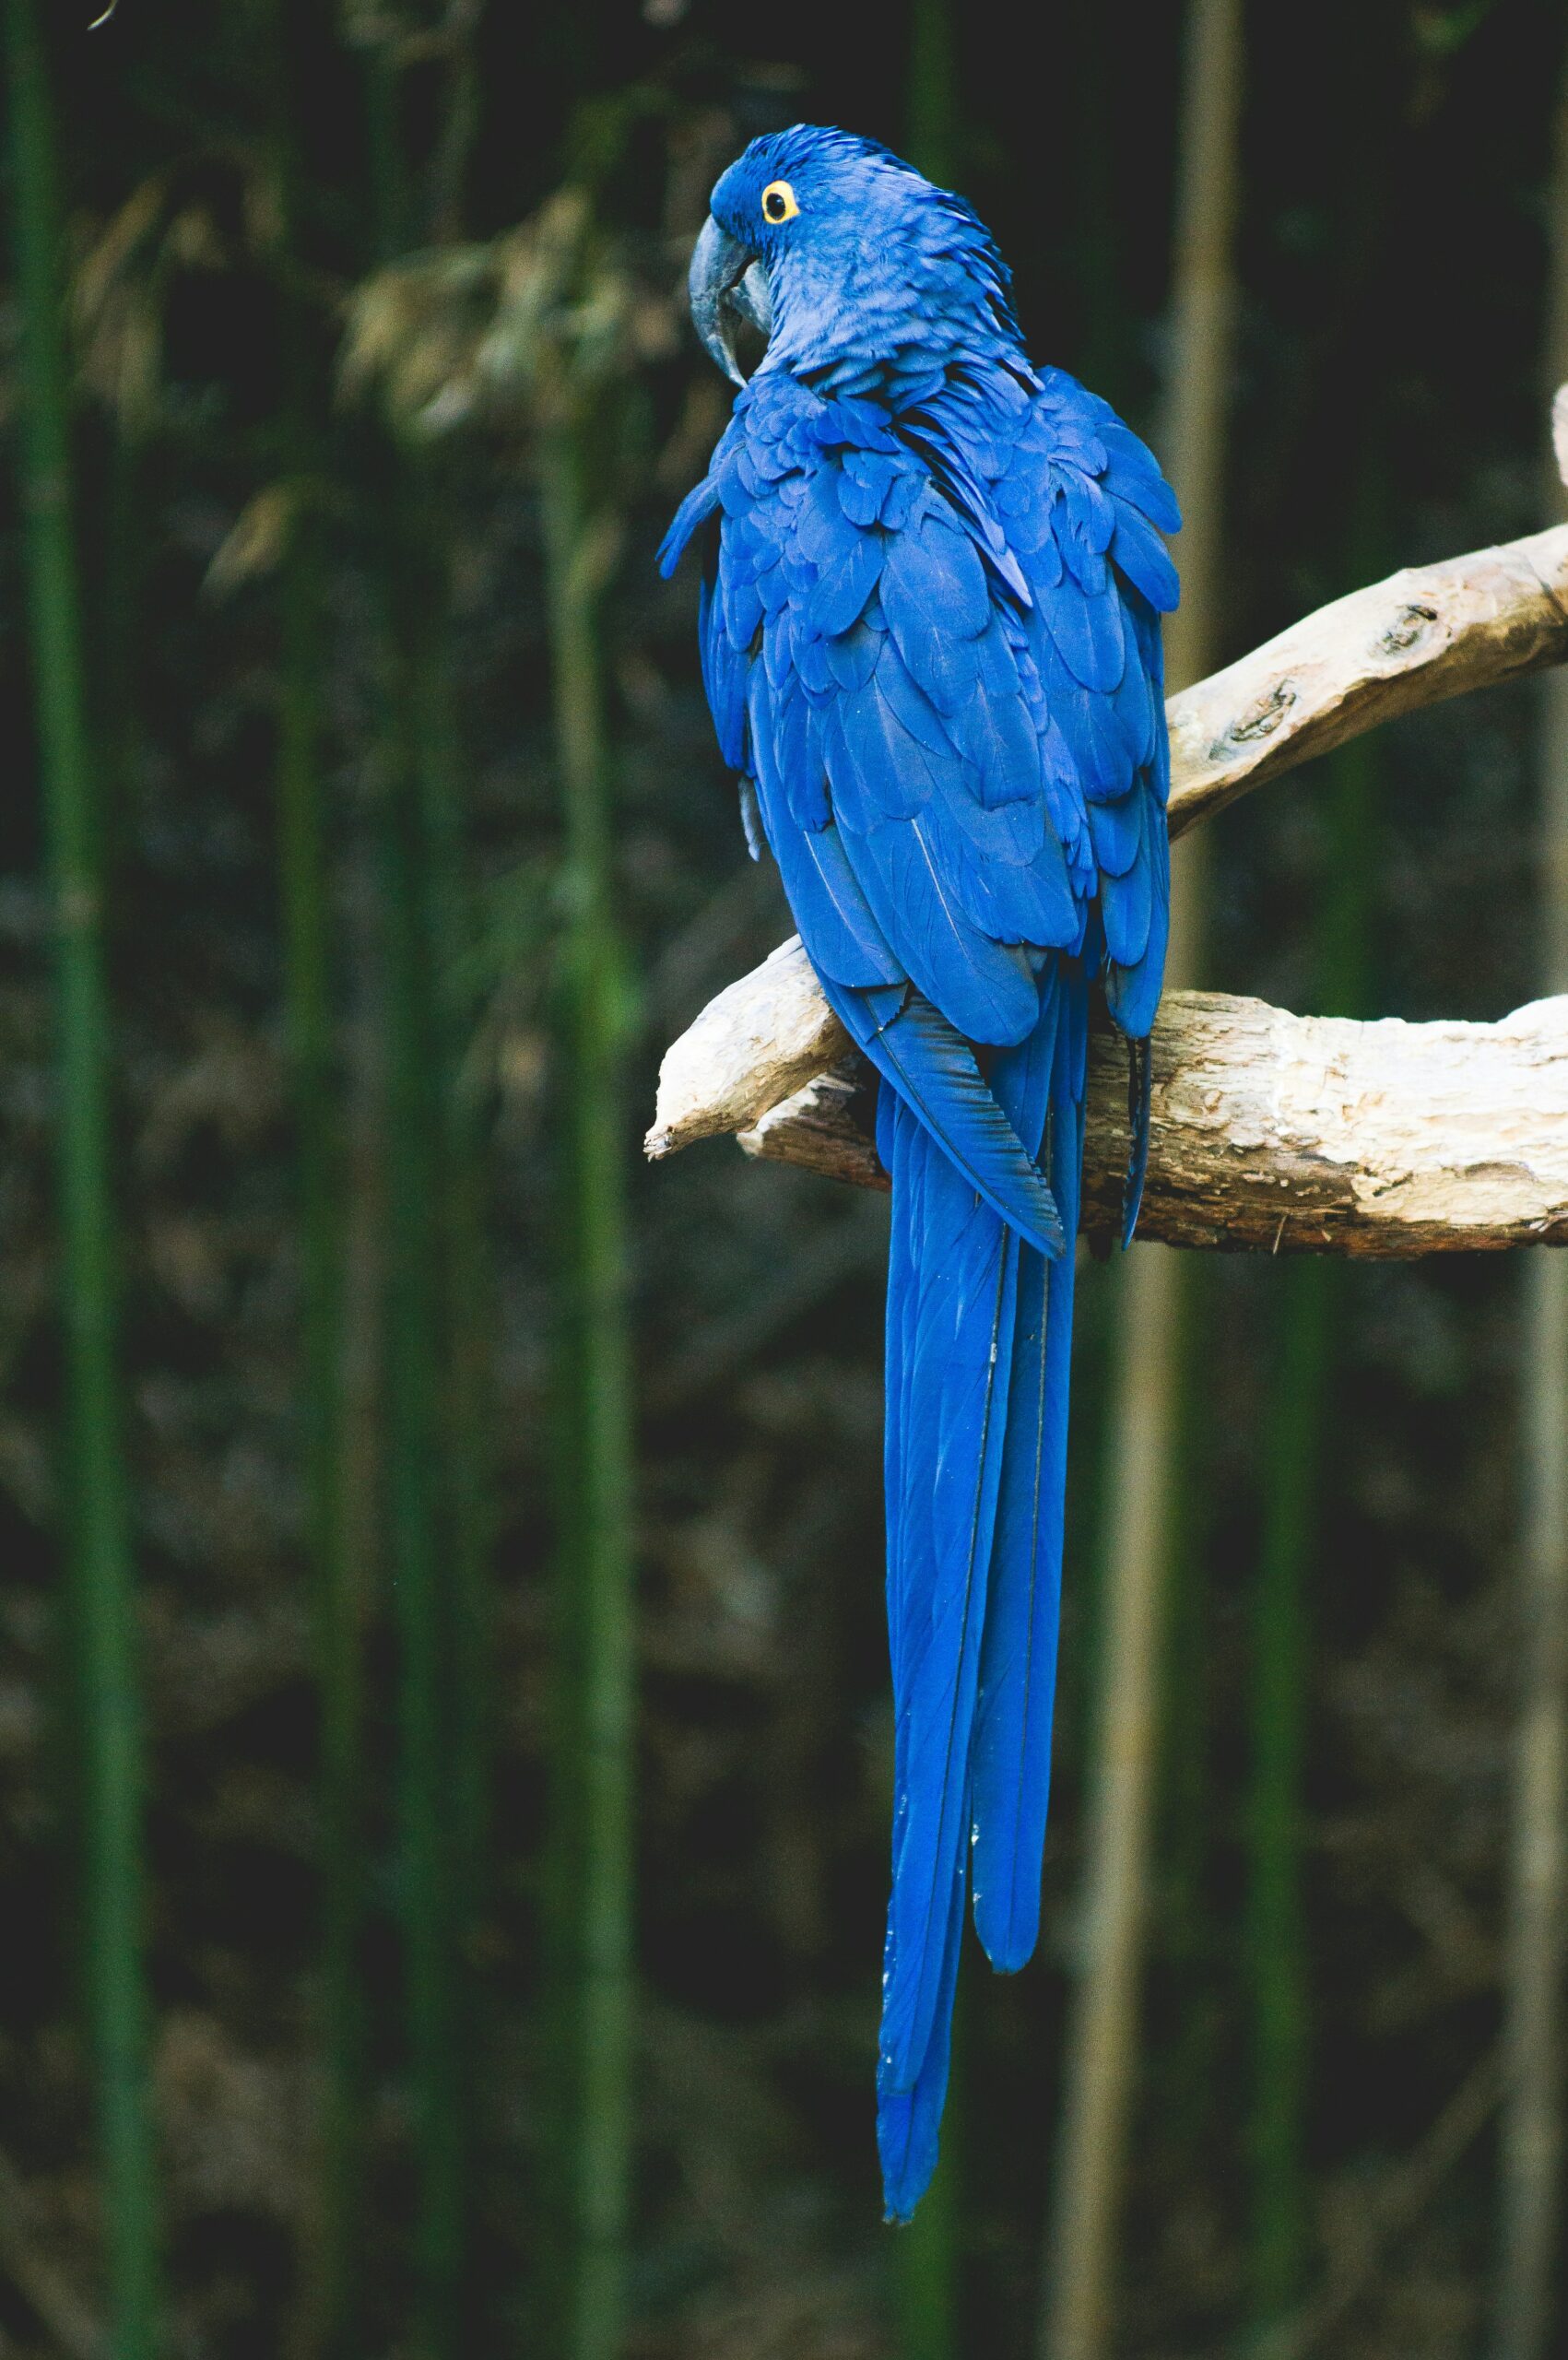 Siju Bird Sanctuary - A Avian Haven in Meghalaya's Scenic Landscape